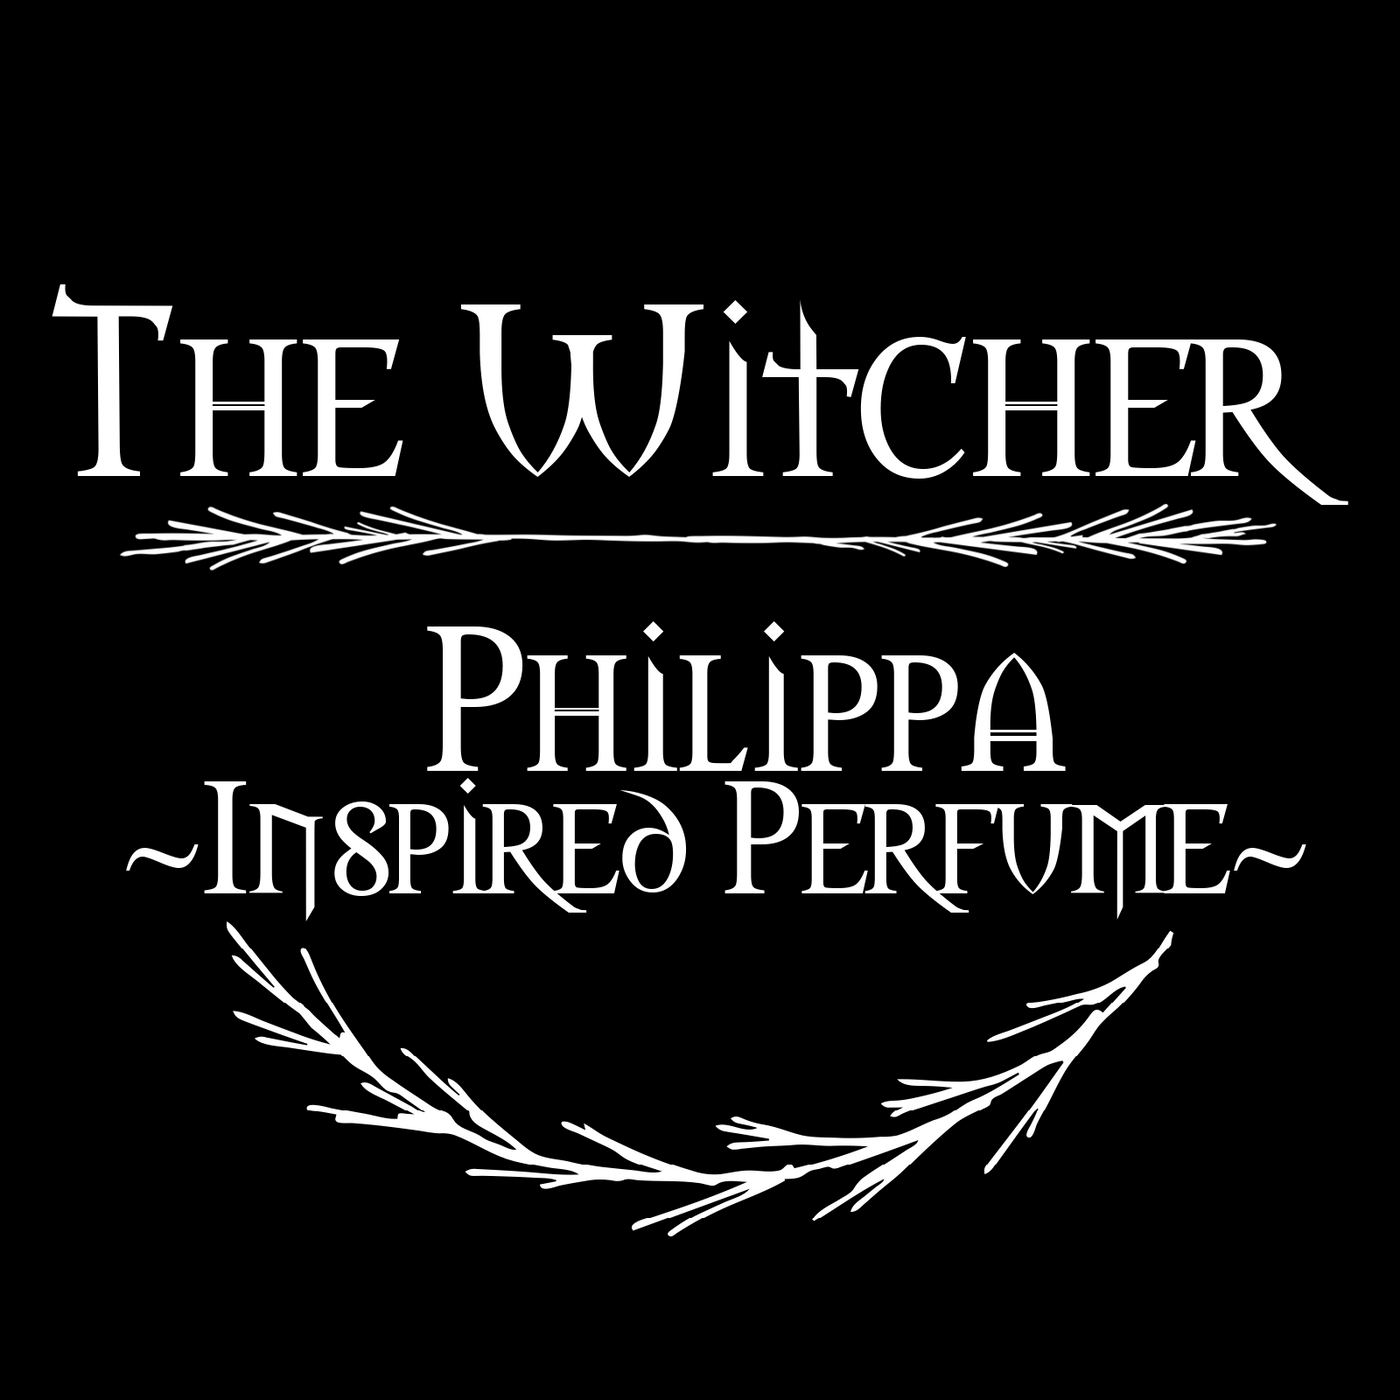 Philippa Eilhart inspired perfume (Cinnamon, Musk, Dark Woods, Chestnut, Tonka Bean, Nag Champa)